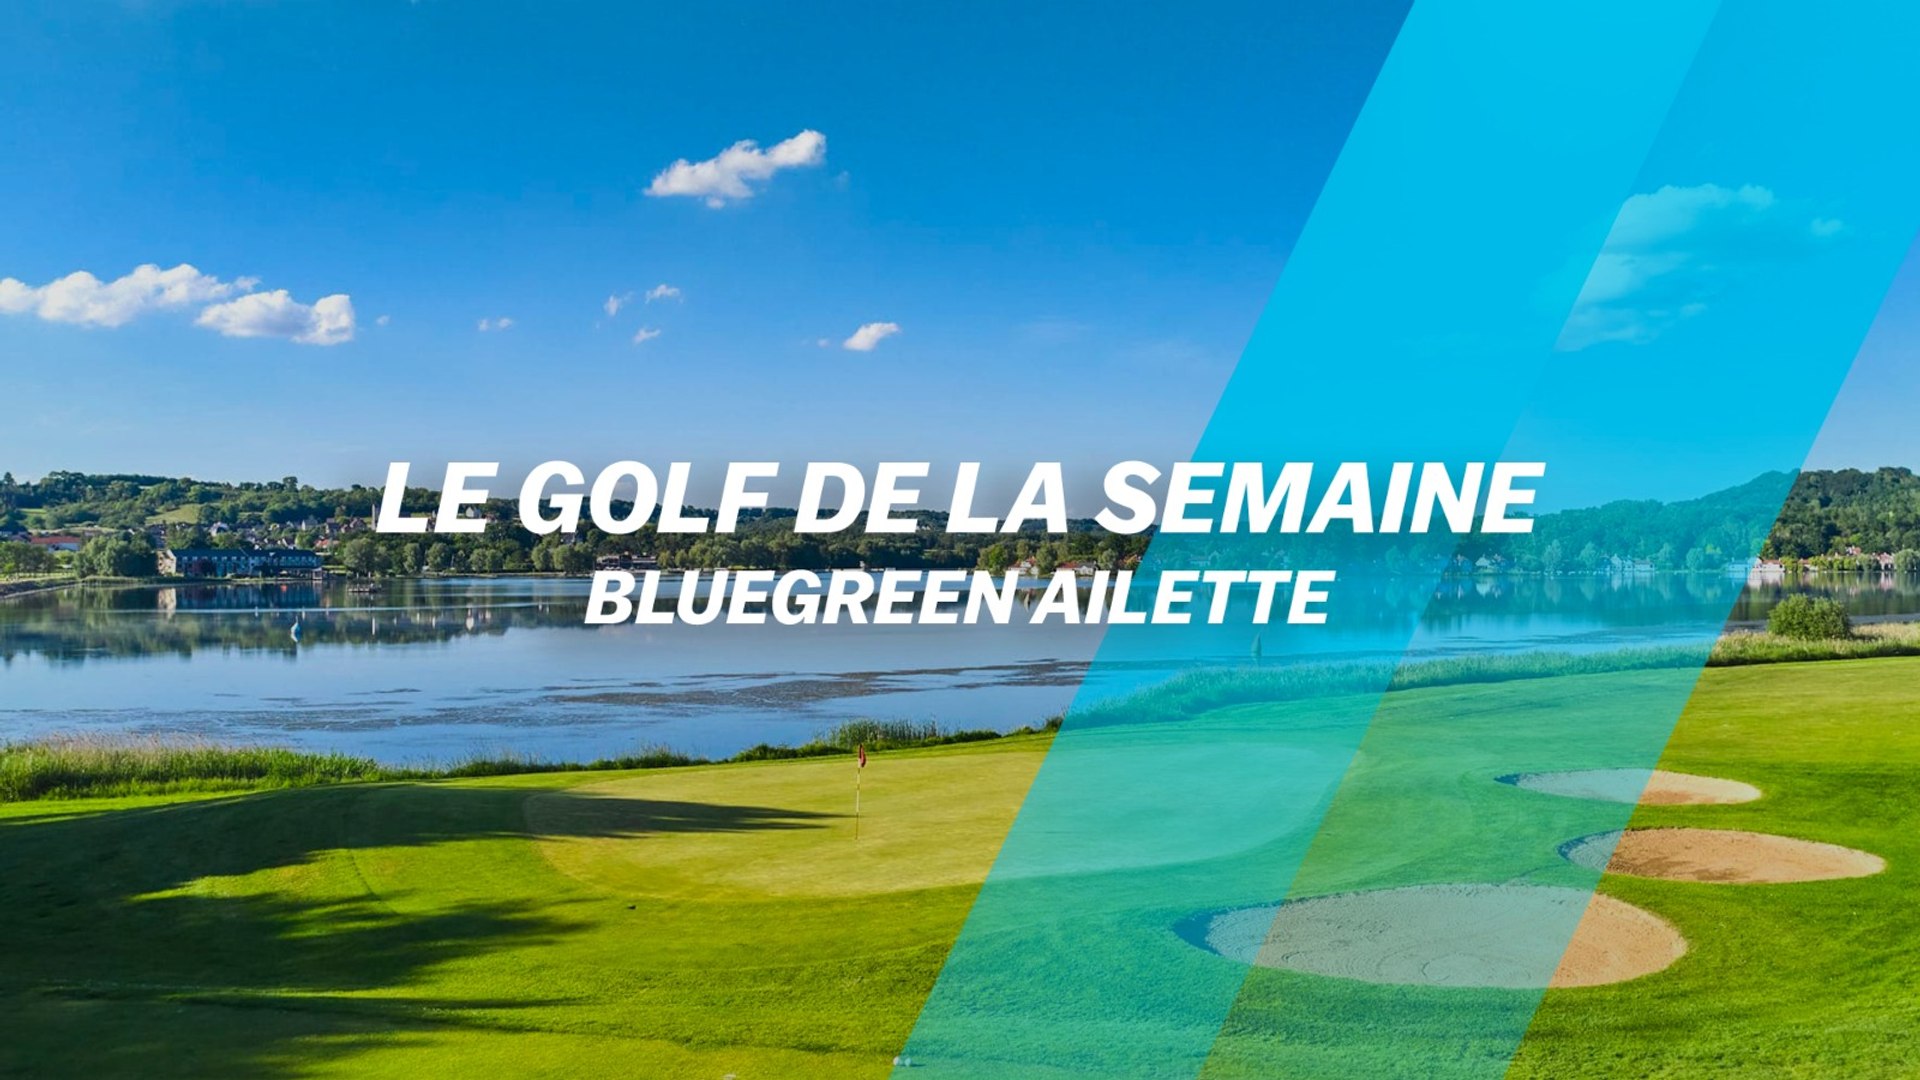 Le Golf de la semaine : Bluegreen L'Ailette - Vidéo Dailymotion